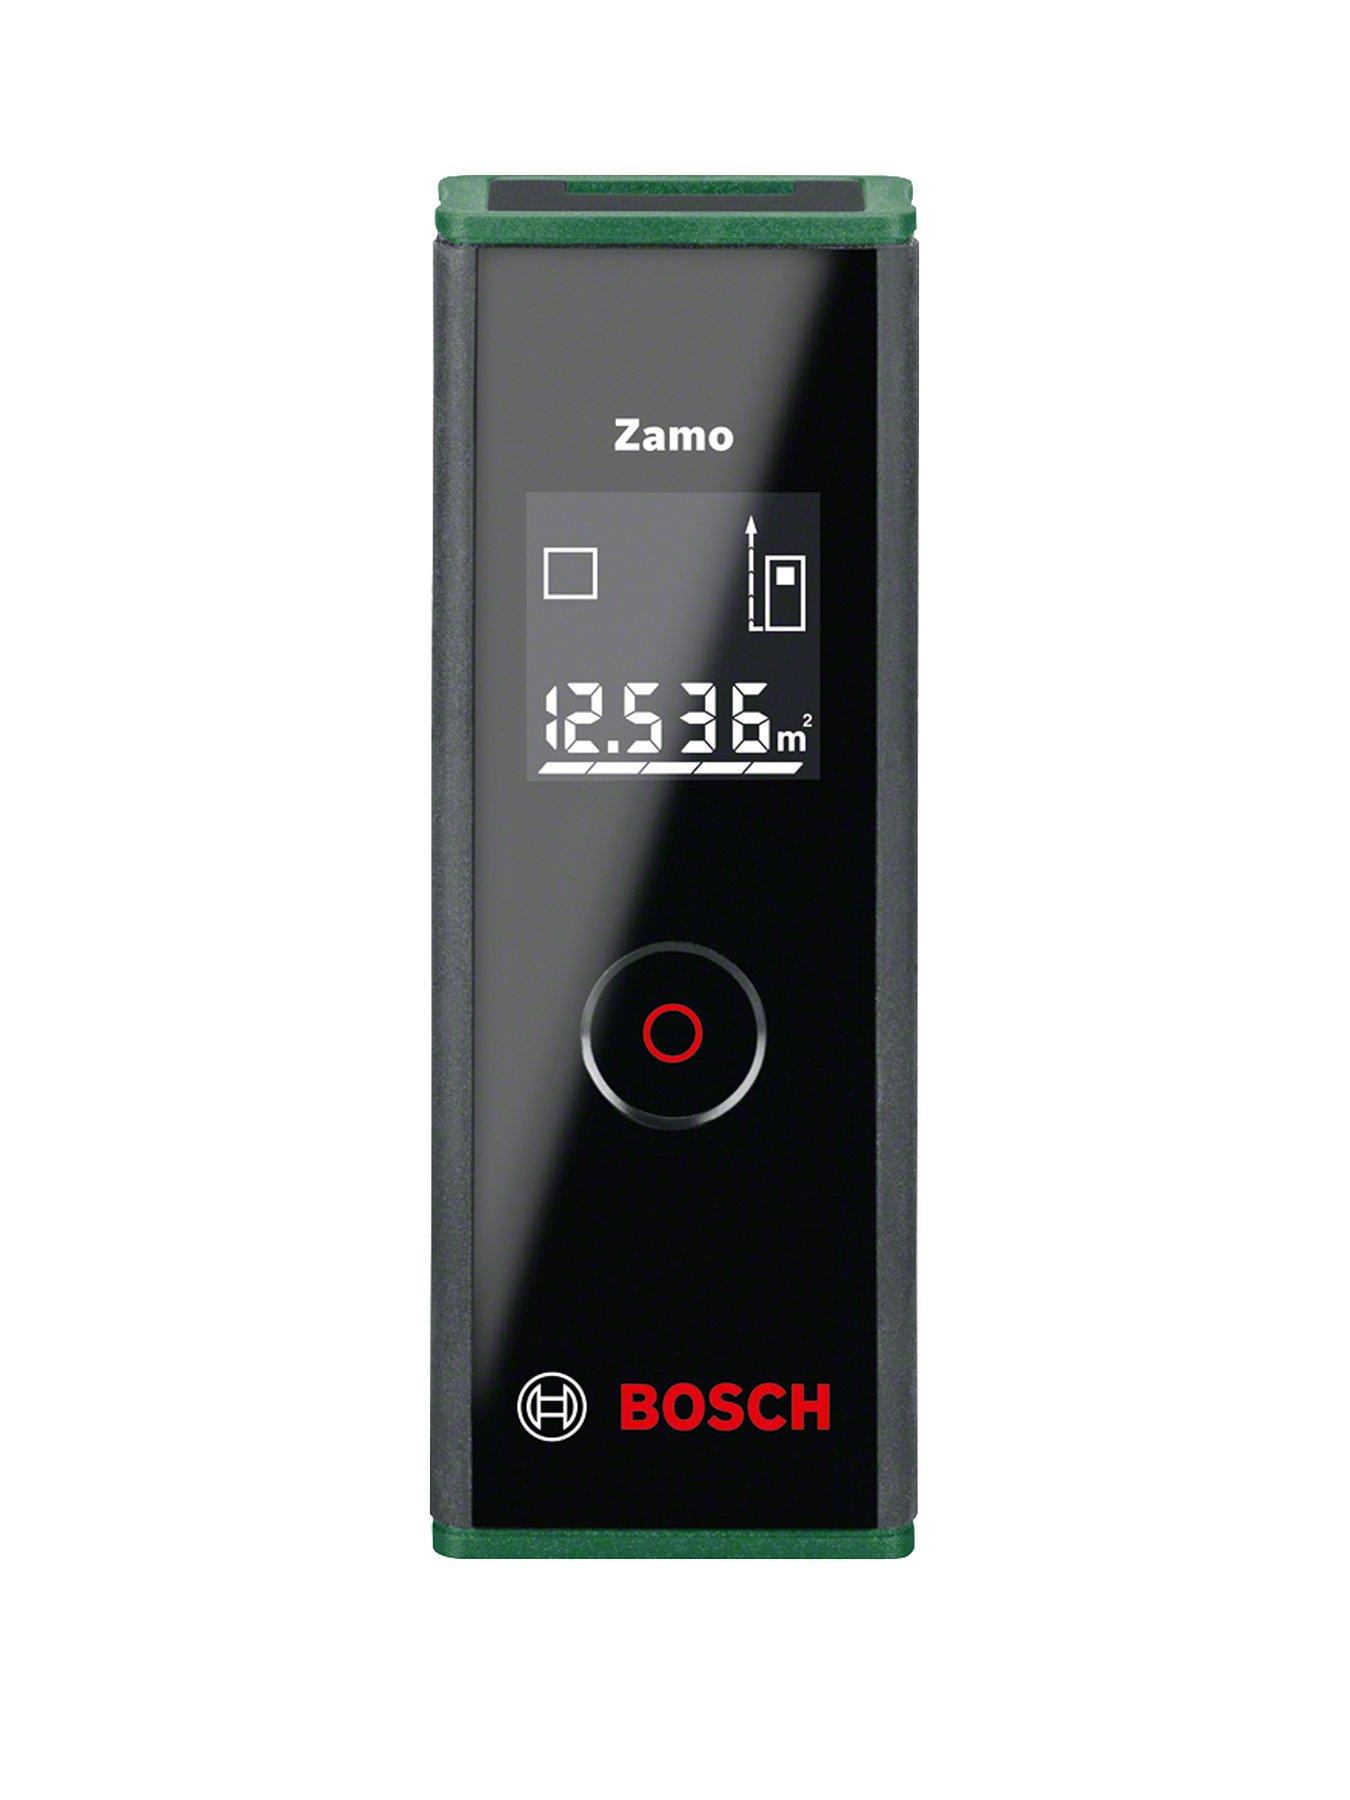 Bosch Zamo II Laser Measure